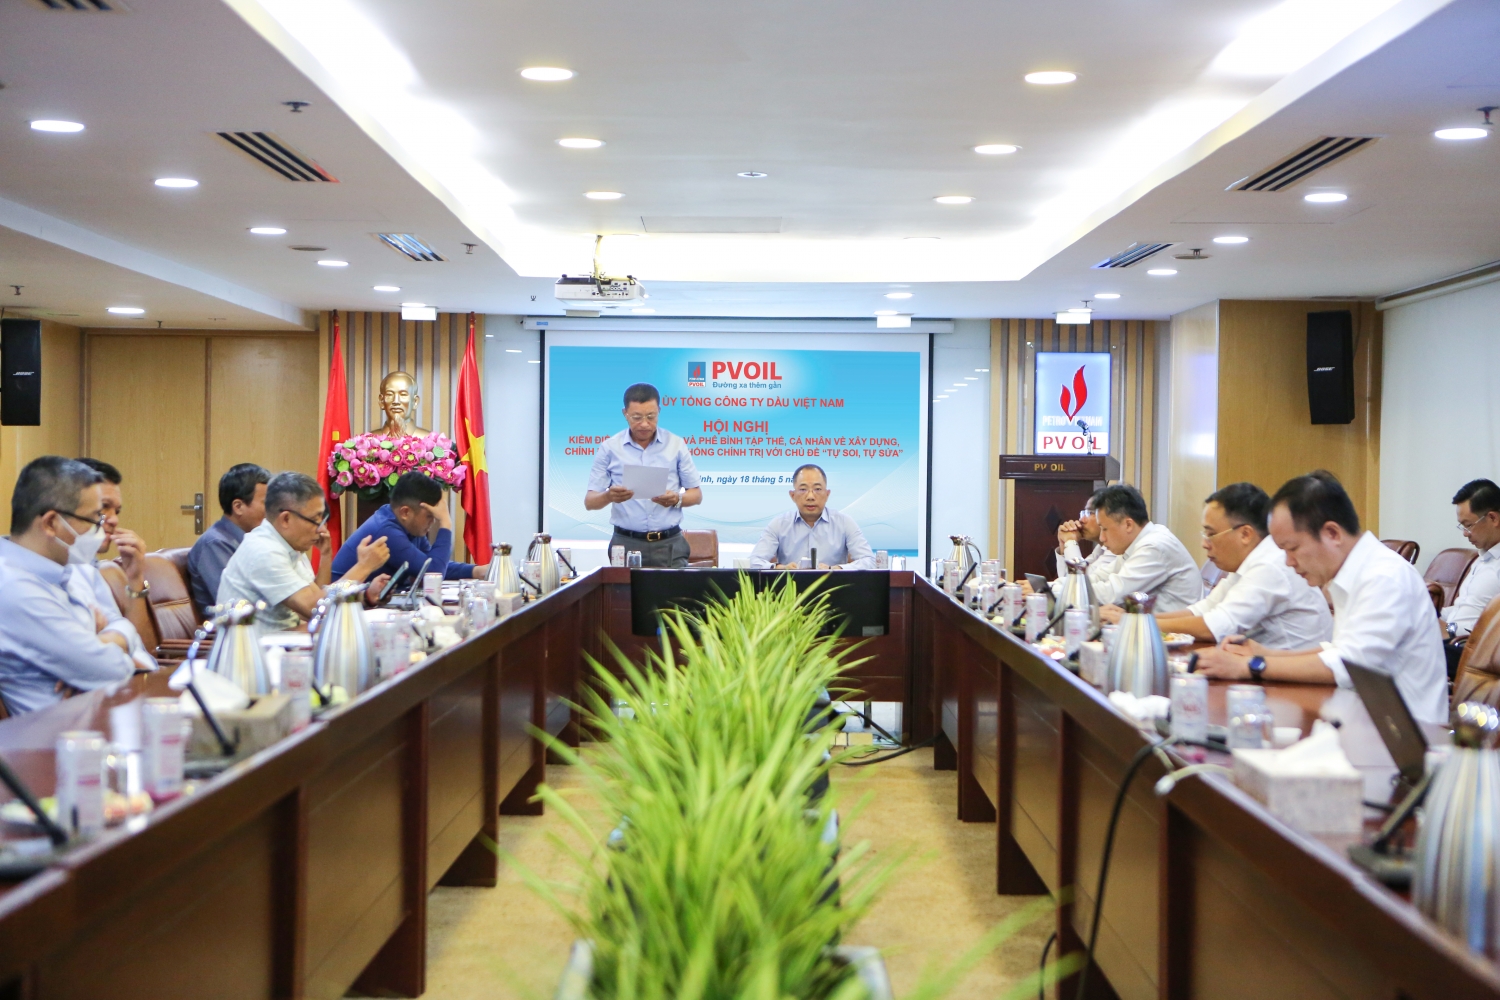 Các đồng chí Lãnh đạo trình bày bản tự kiểm điểm người đứng đầu Tổng công ty Dầu Việt Nam